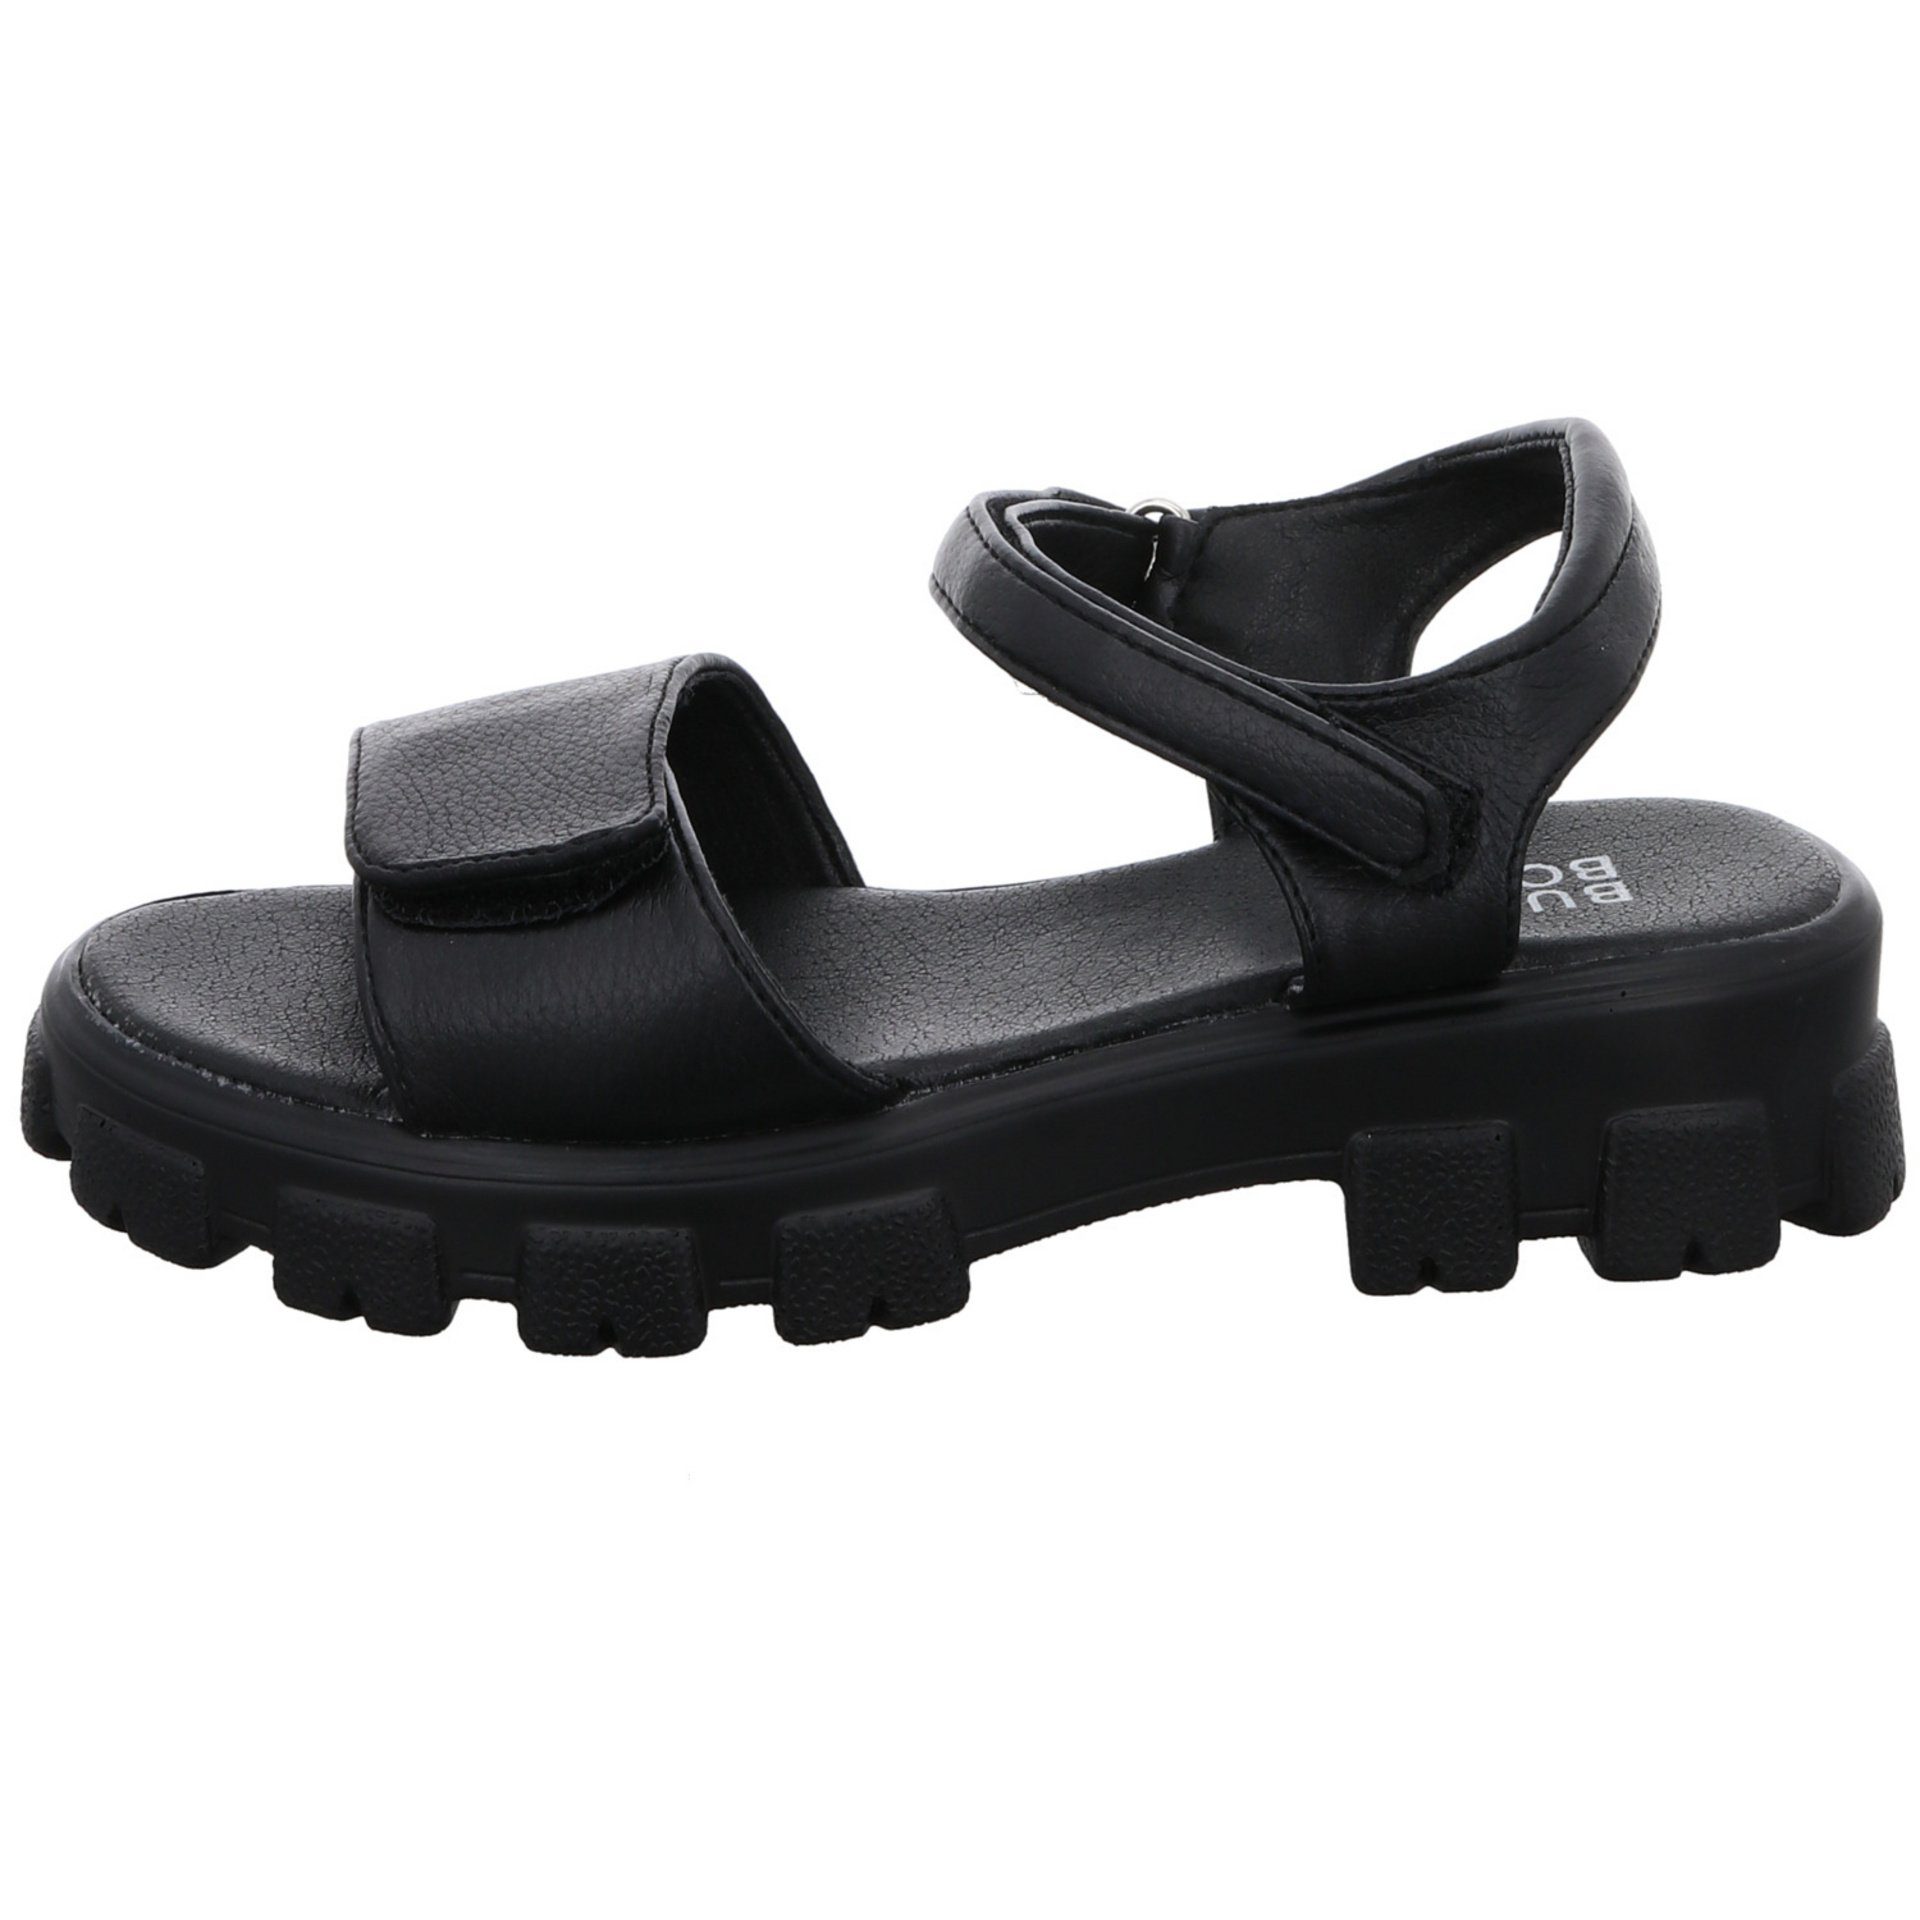 Bullboxer Mädchen Sandalen Synthetik schwarz Schuhe Sandale Sandale dunkel Kinderschuhe